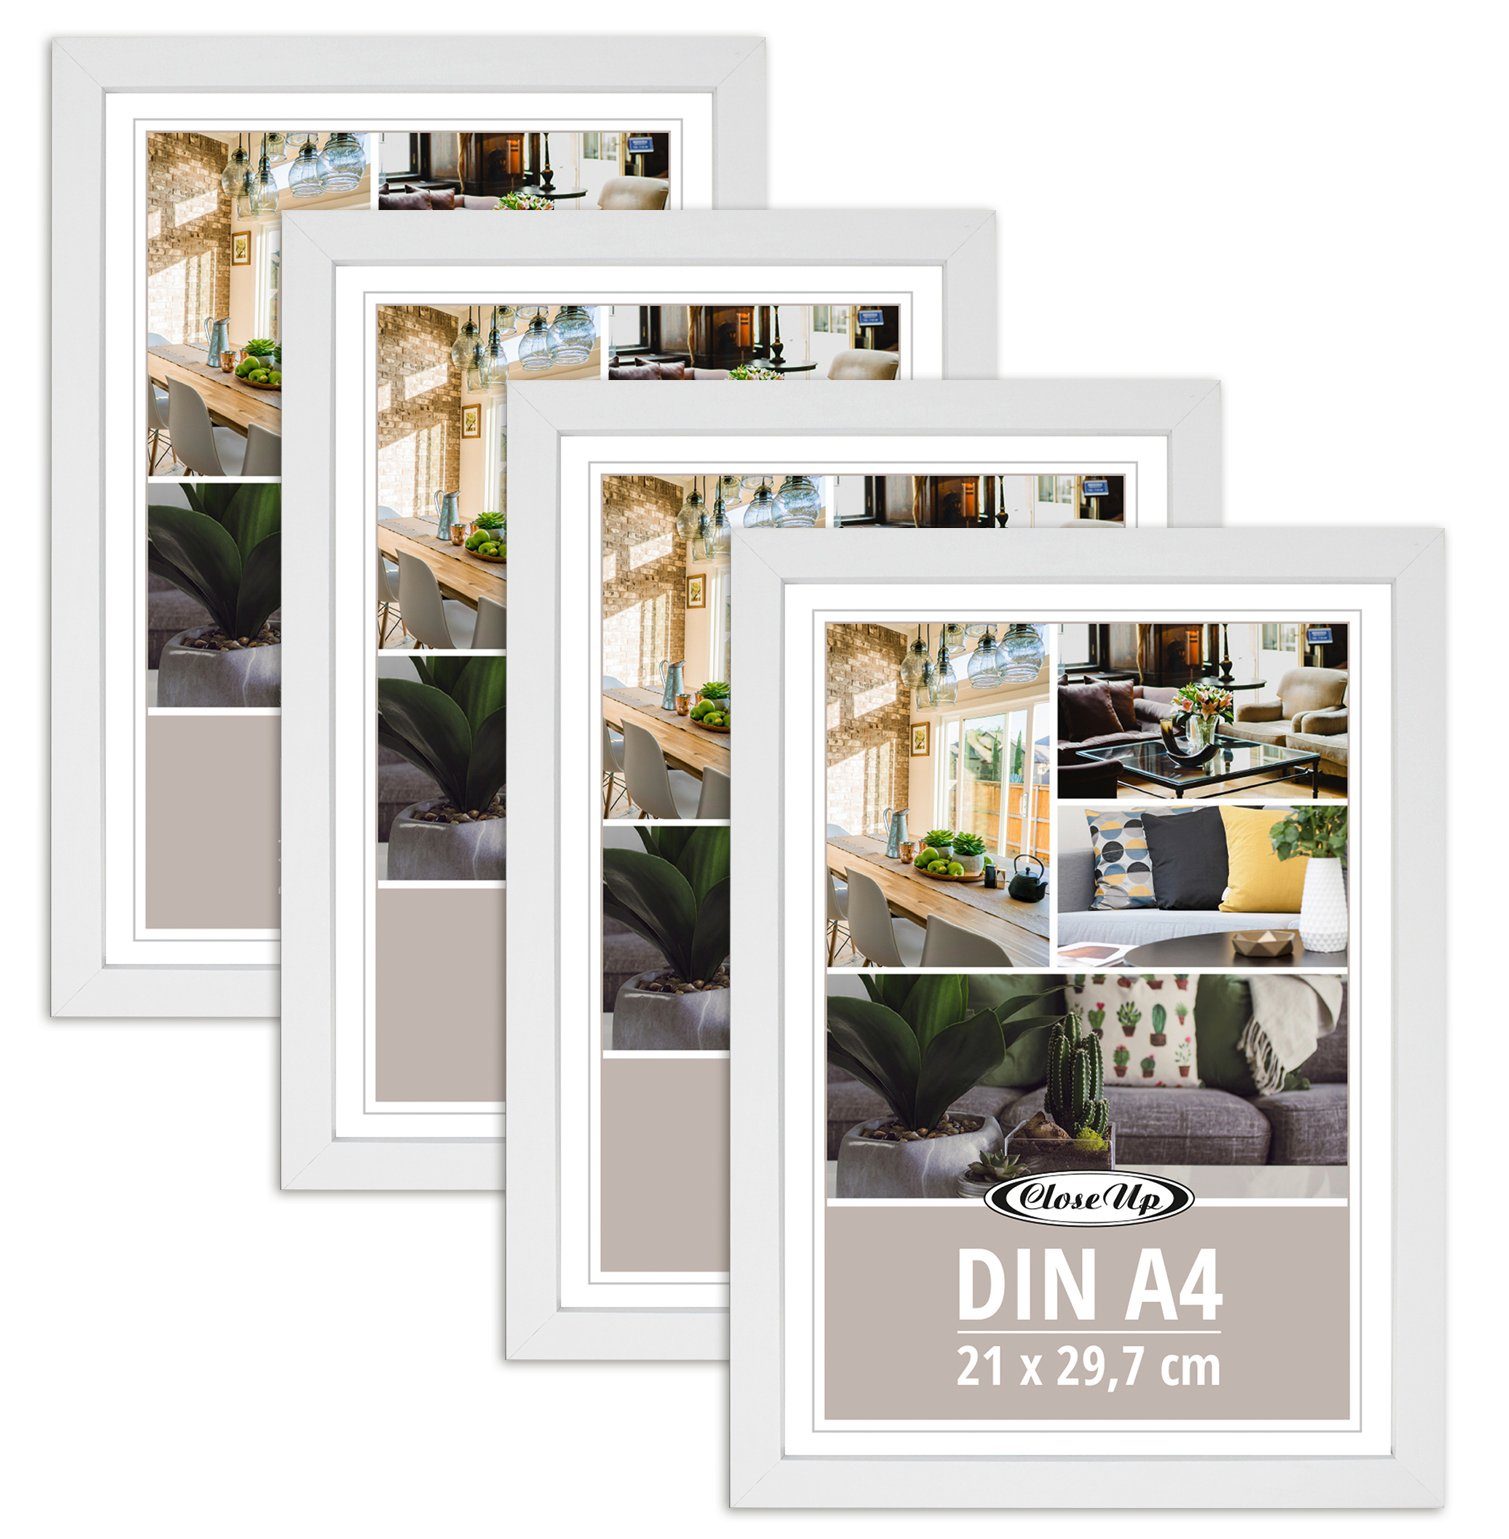 Close Up Bilderrahmen Posterrahmen 21 x 29,7 cm 4er Set (DIN A4) Holzdekor weiß